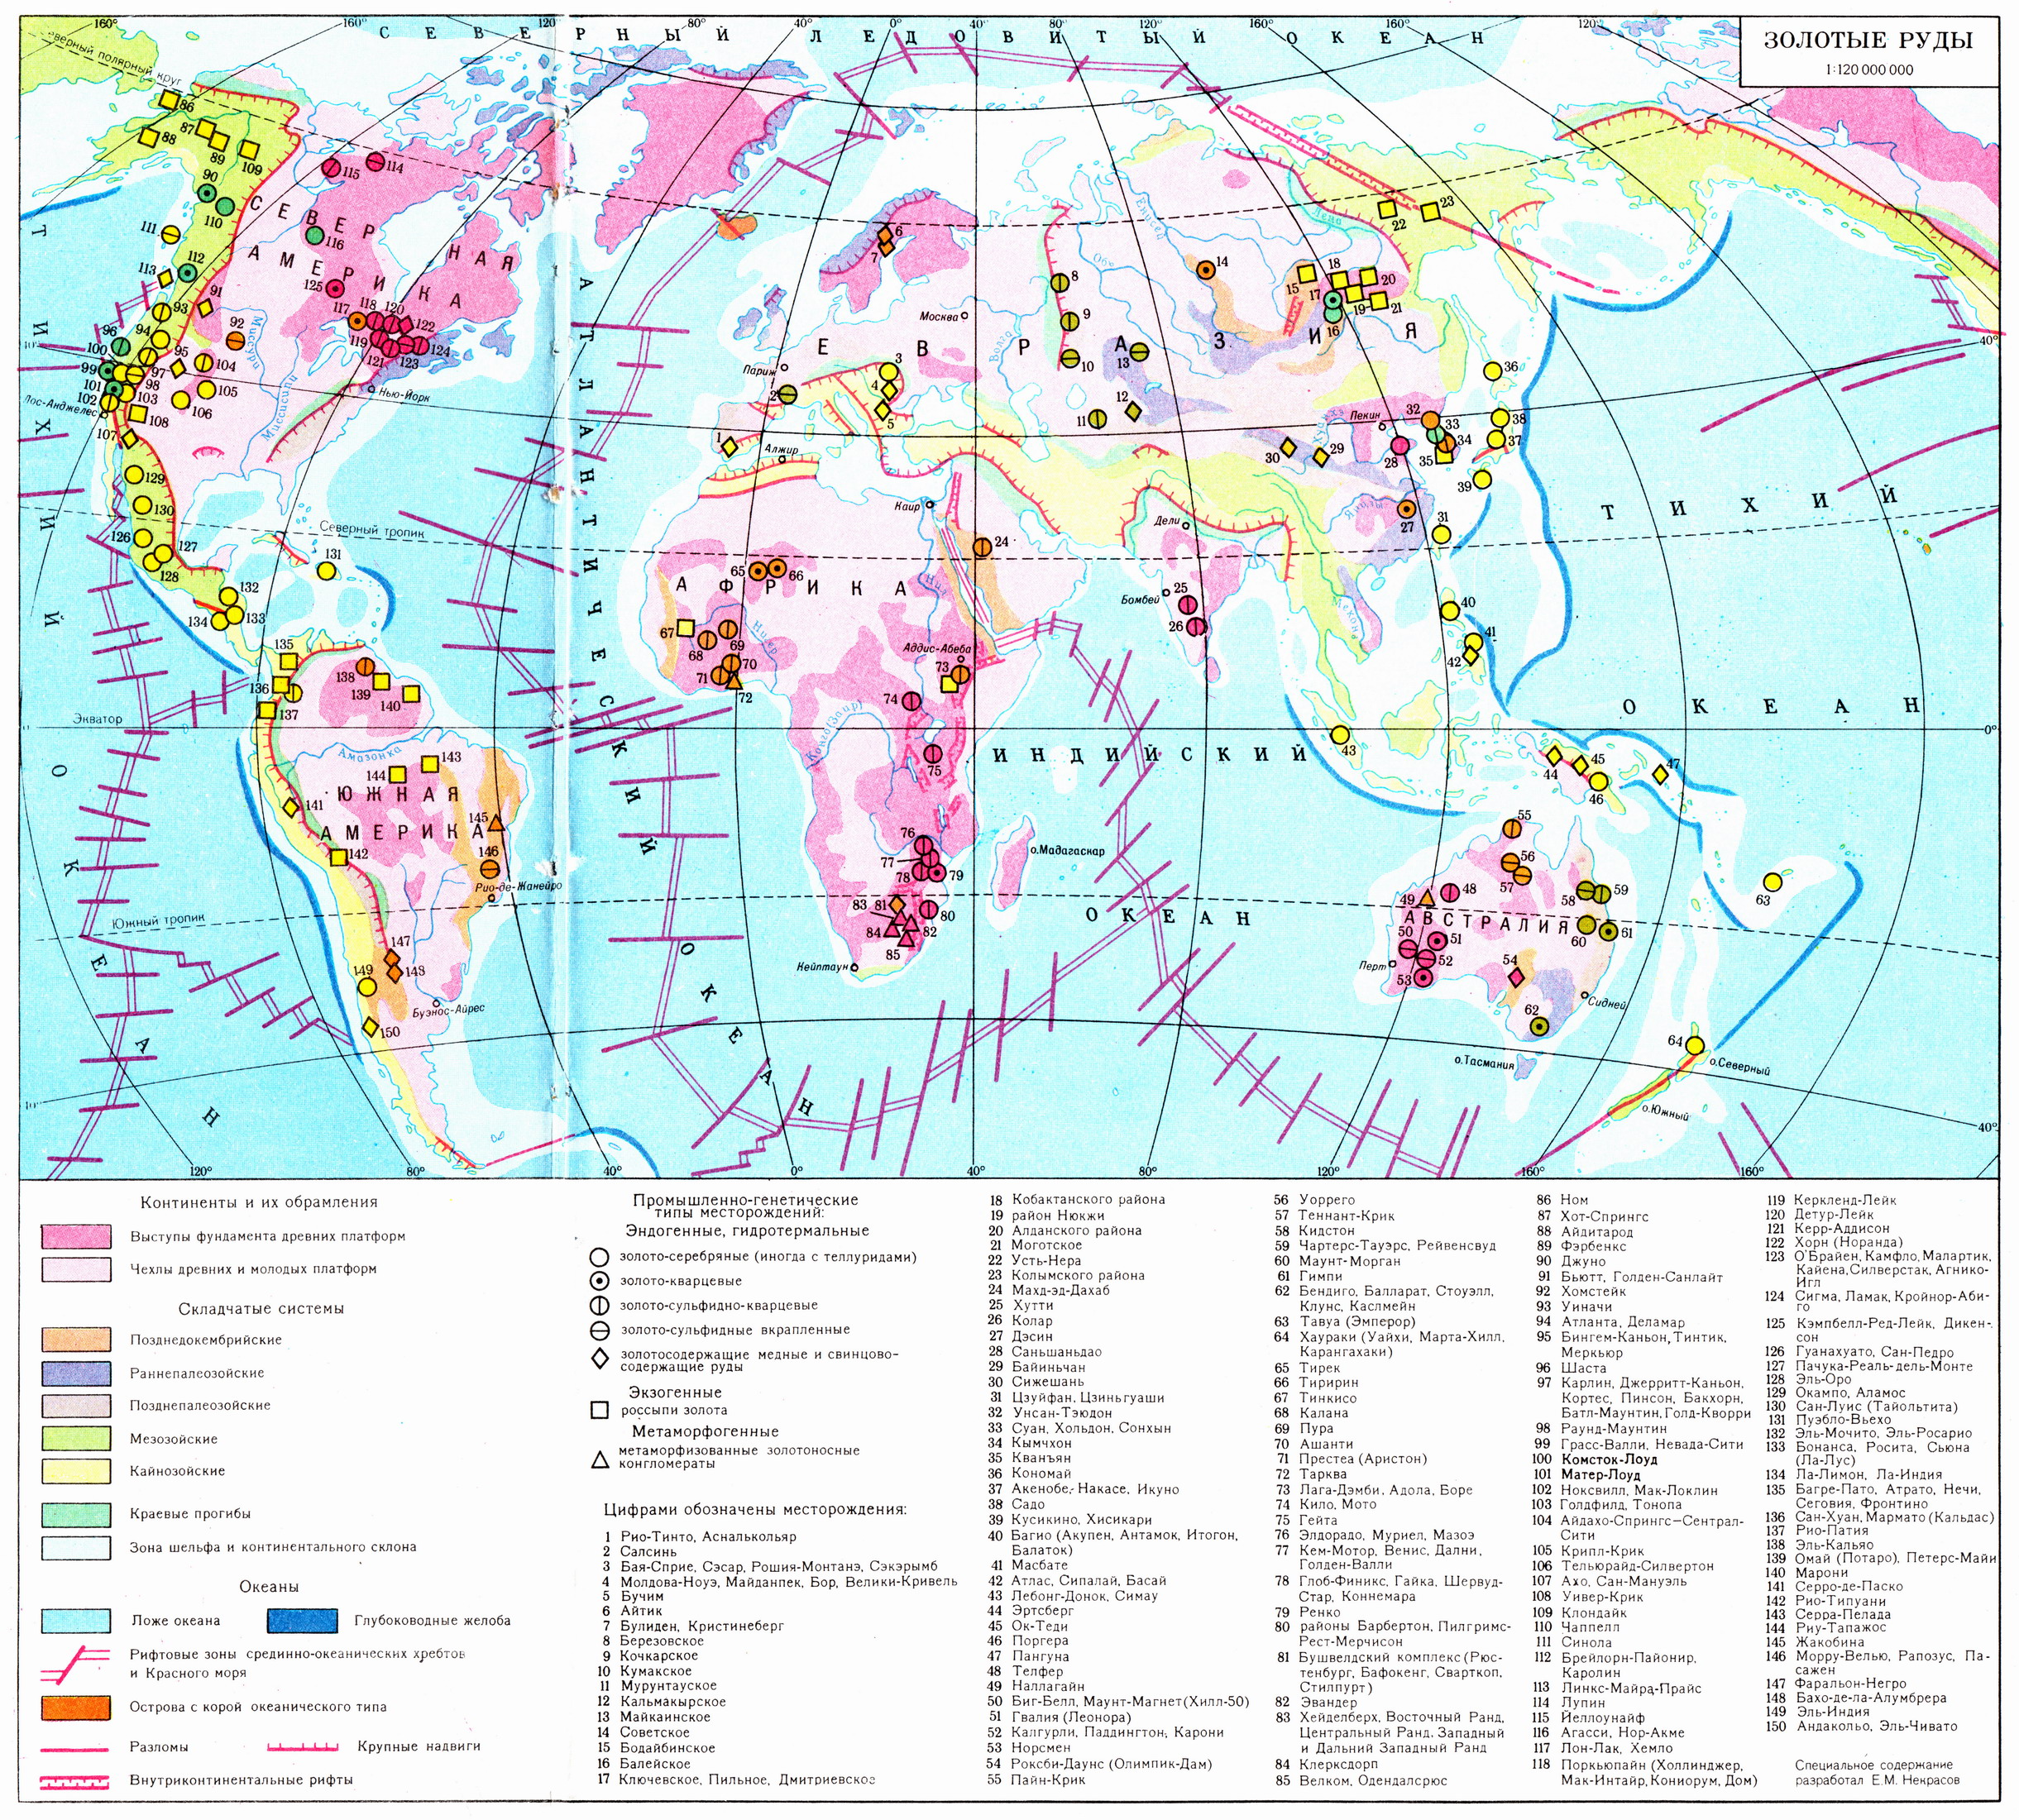 Месторождения золота на карте мира